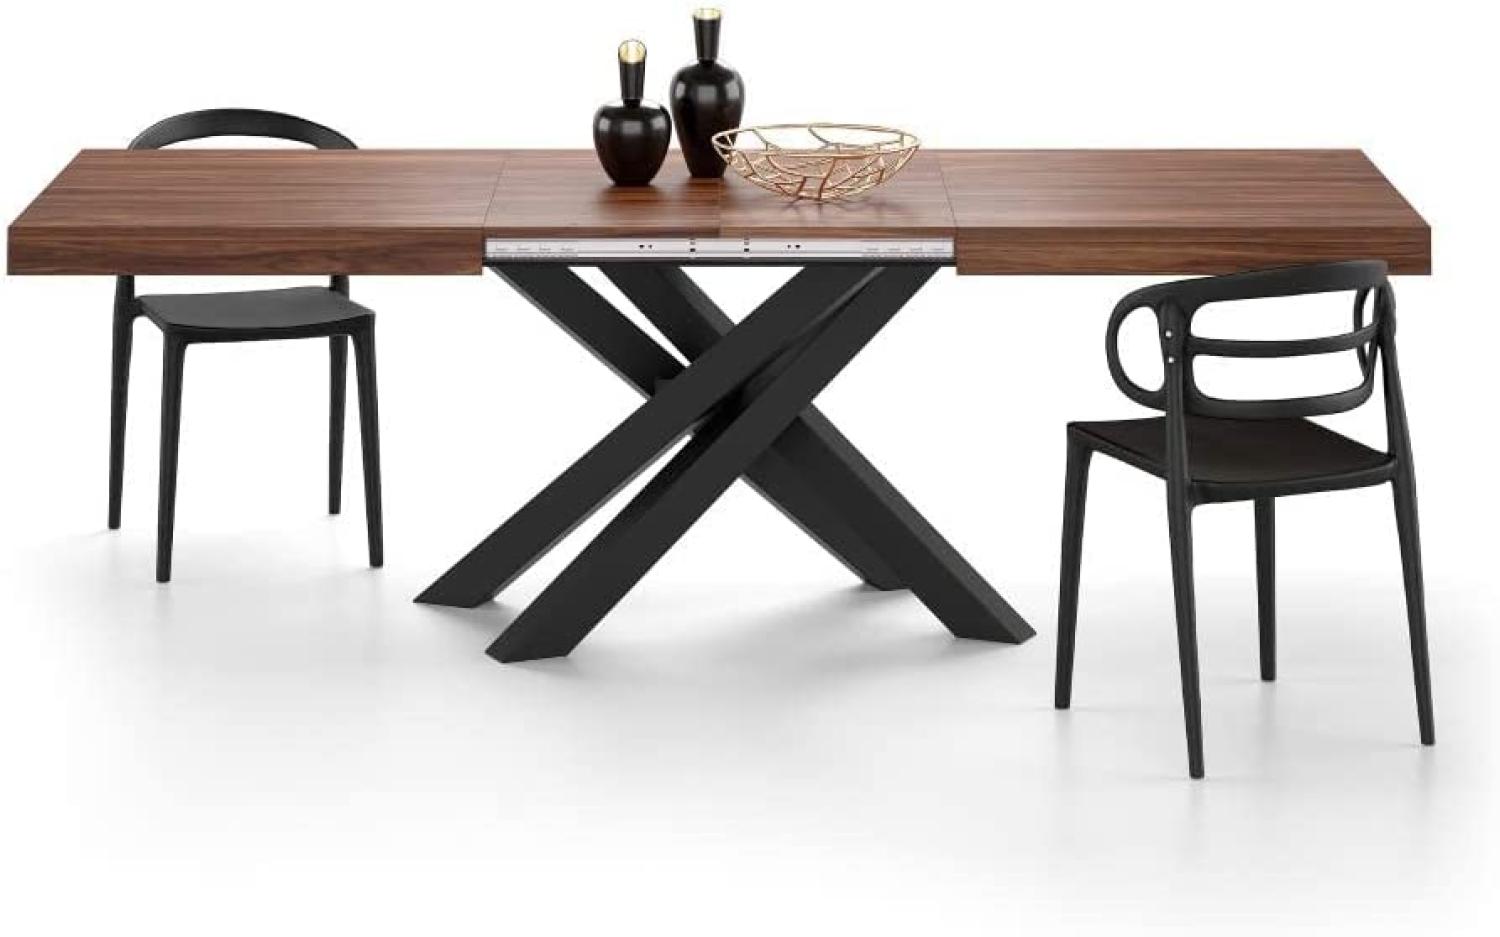 MOBILI FIVER, Ausziehbarer Tisch Emma 160, Walnussholz mit schwarzen X-Beinen, Laminiert/Eisen, Made in Italy Bild 1